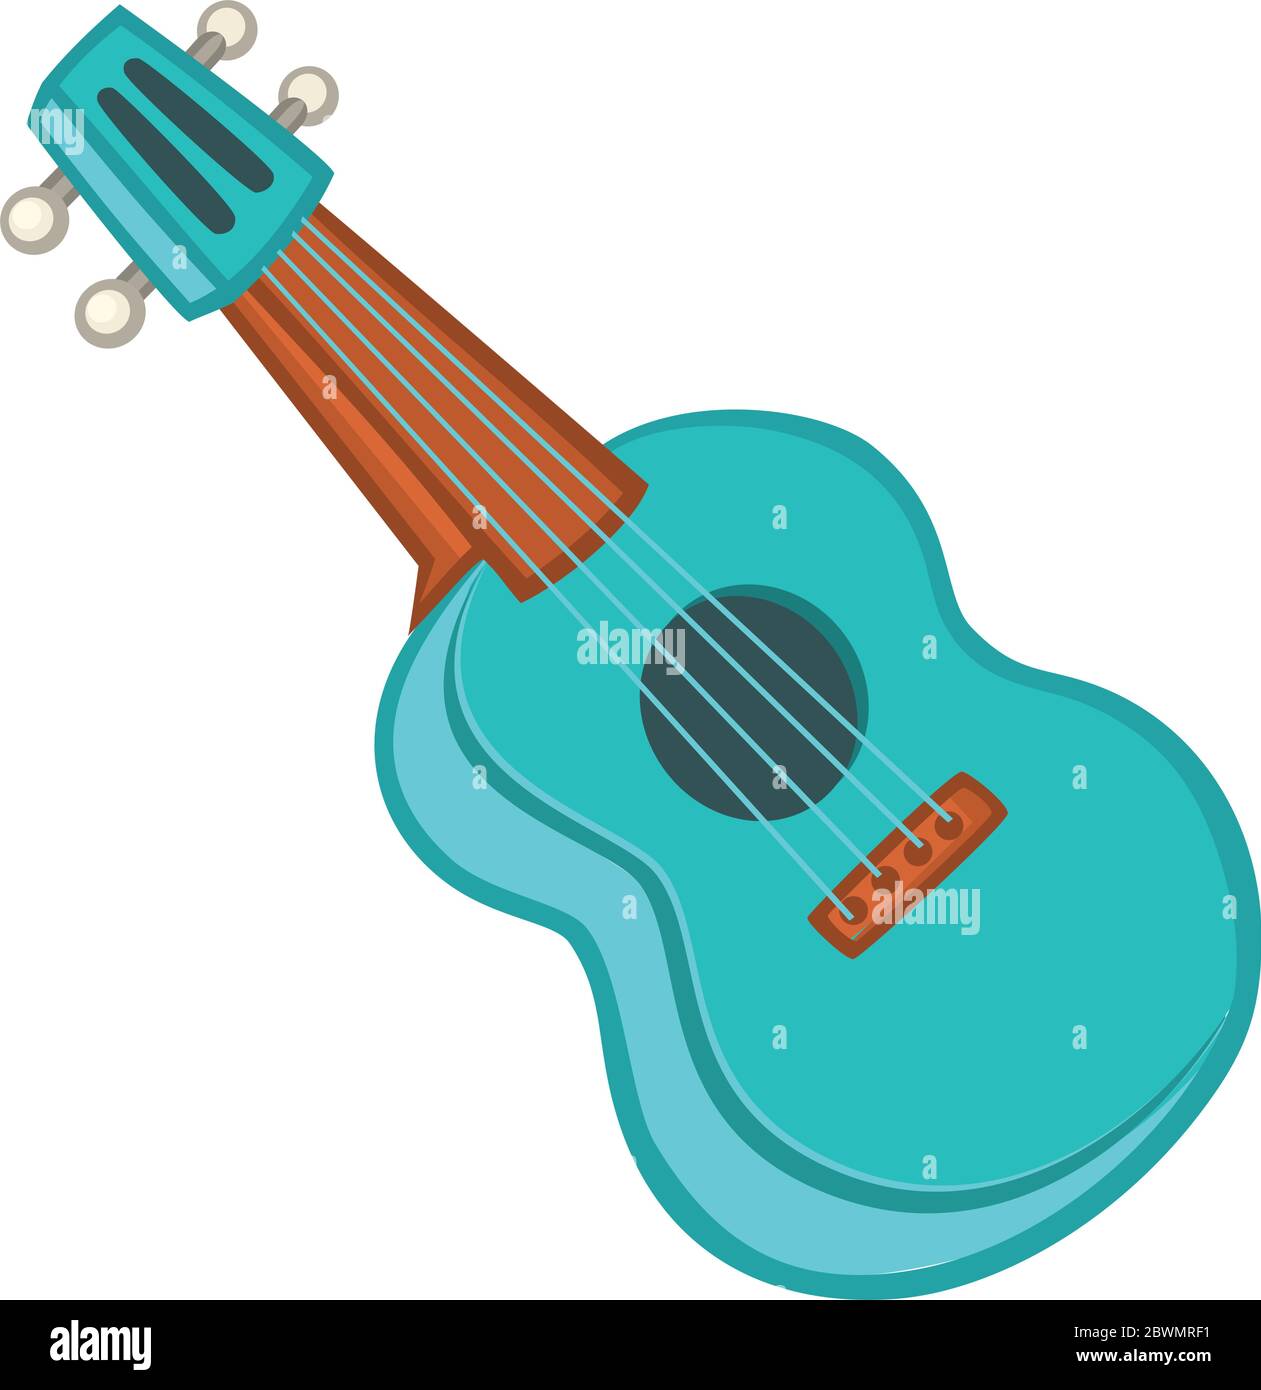 Cartoon ukulele illustration. Vector icon of ukulele isolated Stock Vector  Image & Art - Alamy